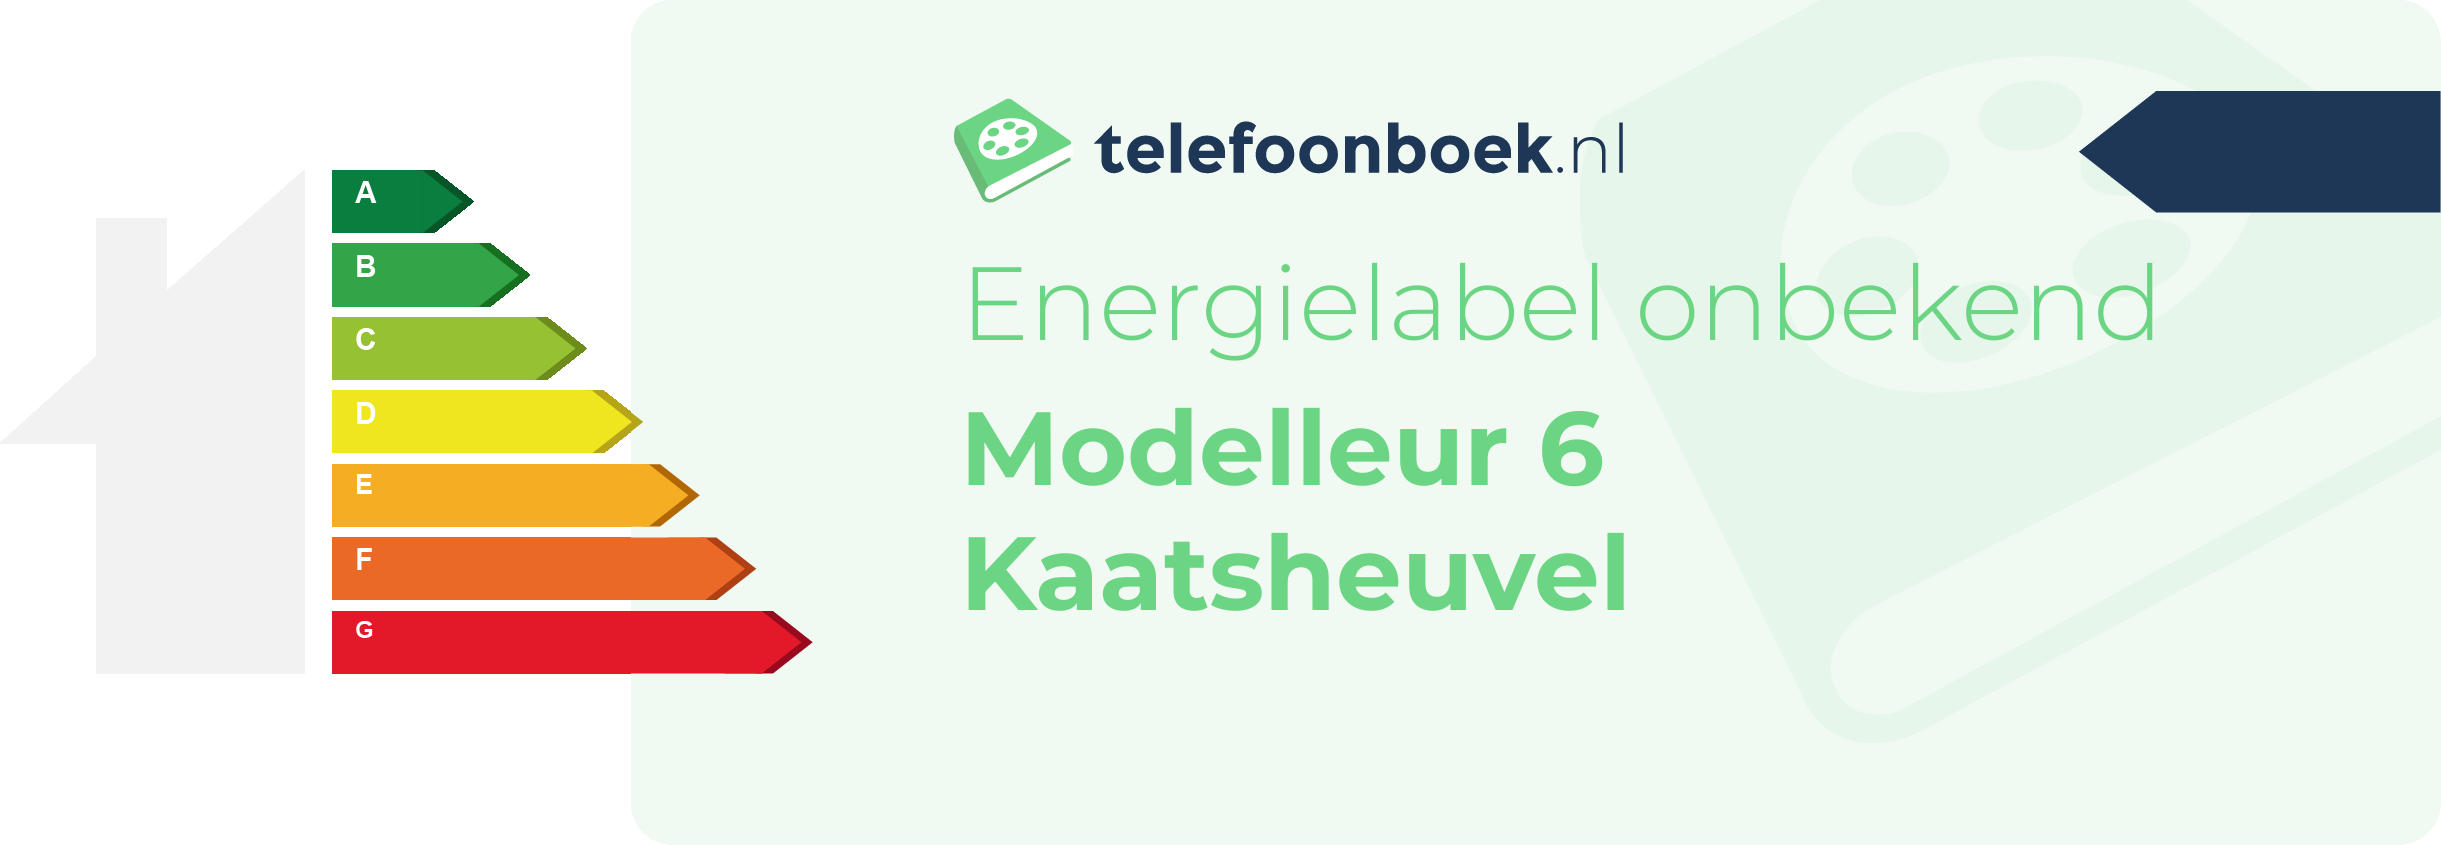 Energielabel Modelleur 6 Kaatsheuvel